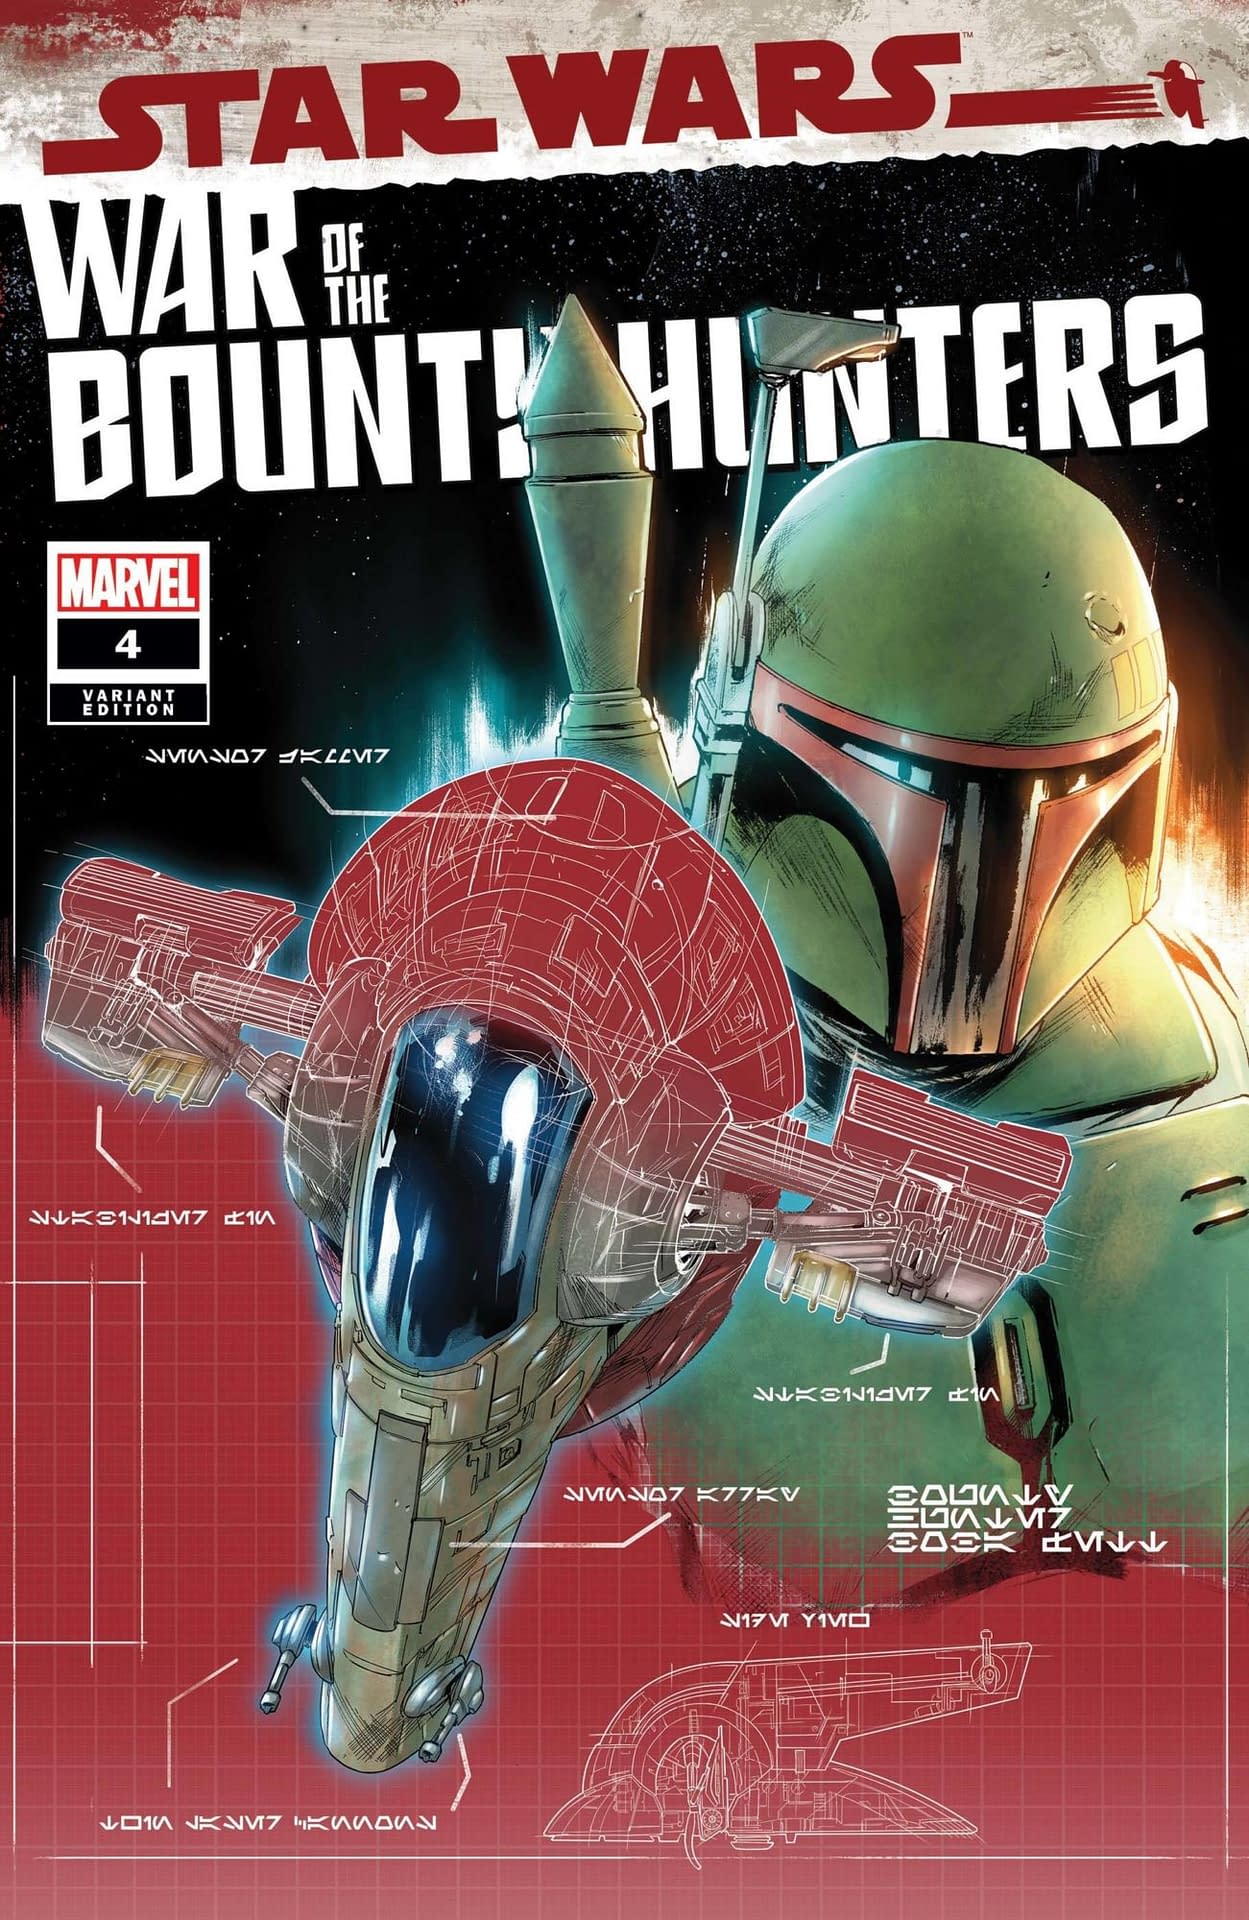 War of the Bounty Hunters #4 Preview: Luke Skywalker is Bait?